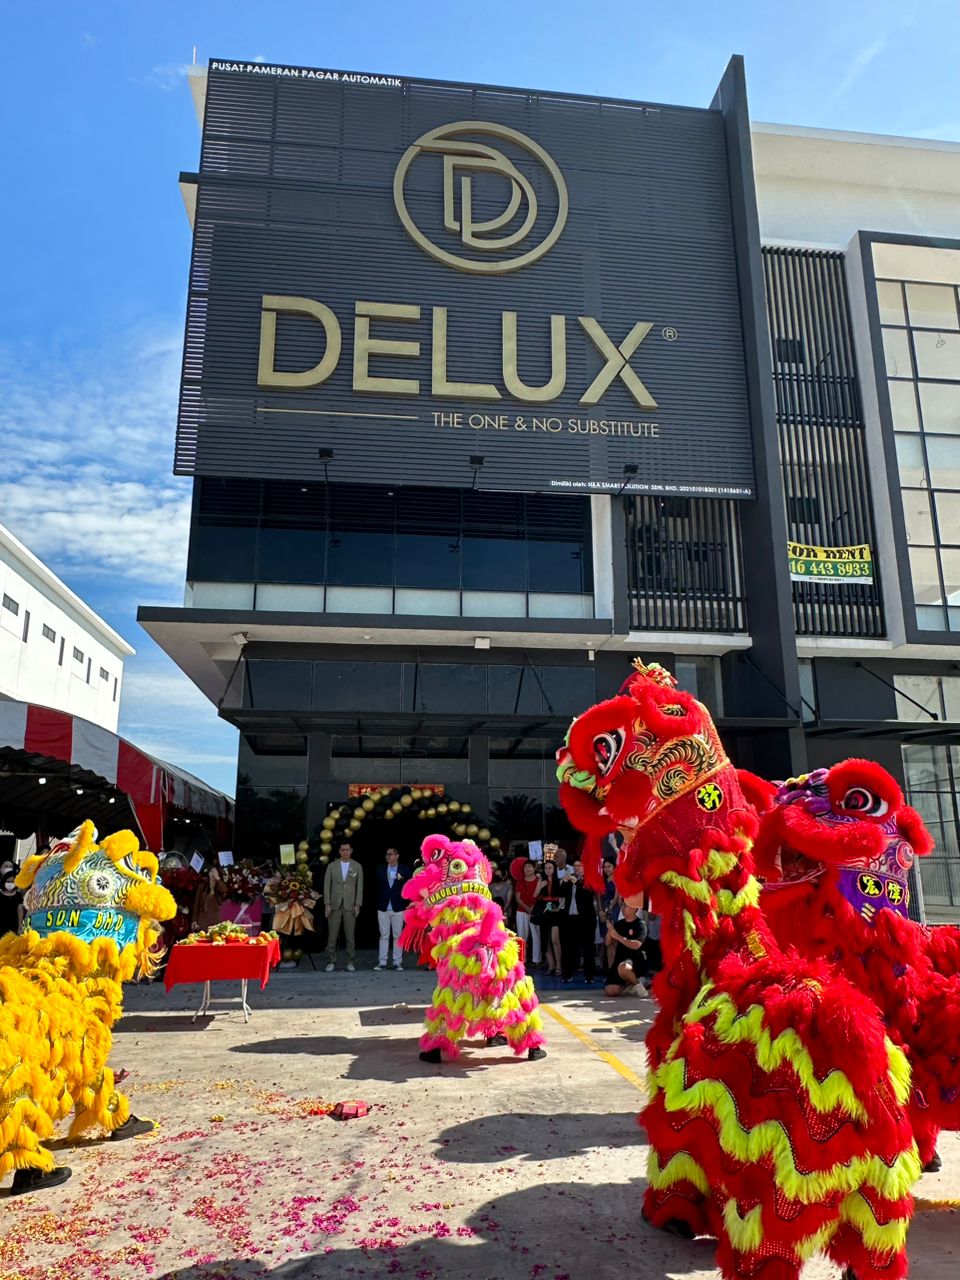 DELUX Malaysia 北馬最大全鋁無軌電動門和全鋁防盜門展示廳開幕，群獅助慶，場面熱鬧。